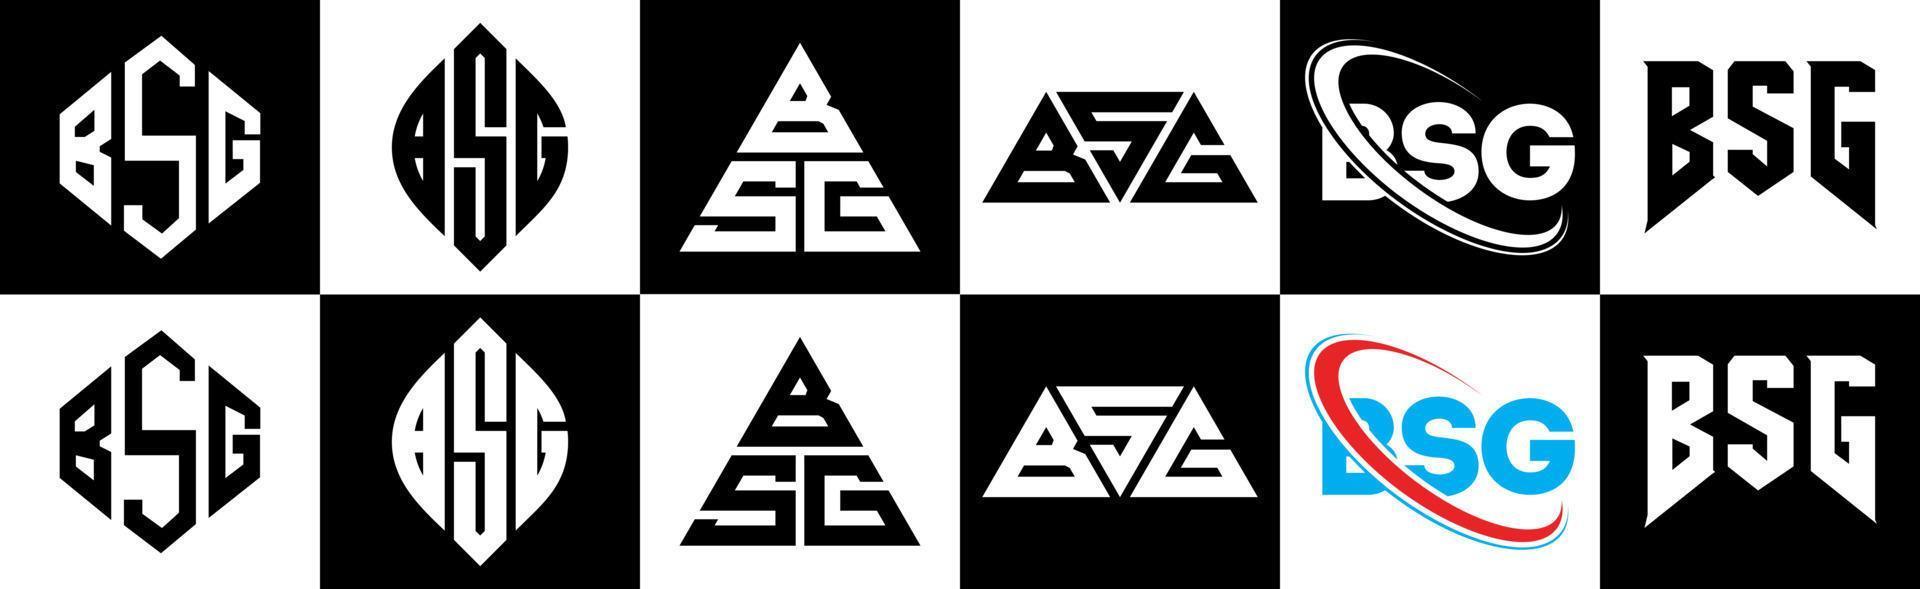 bsg brief logo ontwerp in zes stijl. bsg veelhoek, cirkel, driehoek, zeshoek, vlak en gemakkelijk stijl met zwart en wit kleur variatie brief logo reeks in een tekengebied. bsg minimalistische en klassiek logo vector